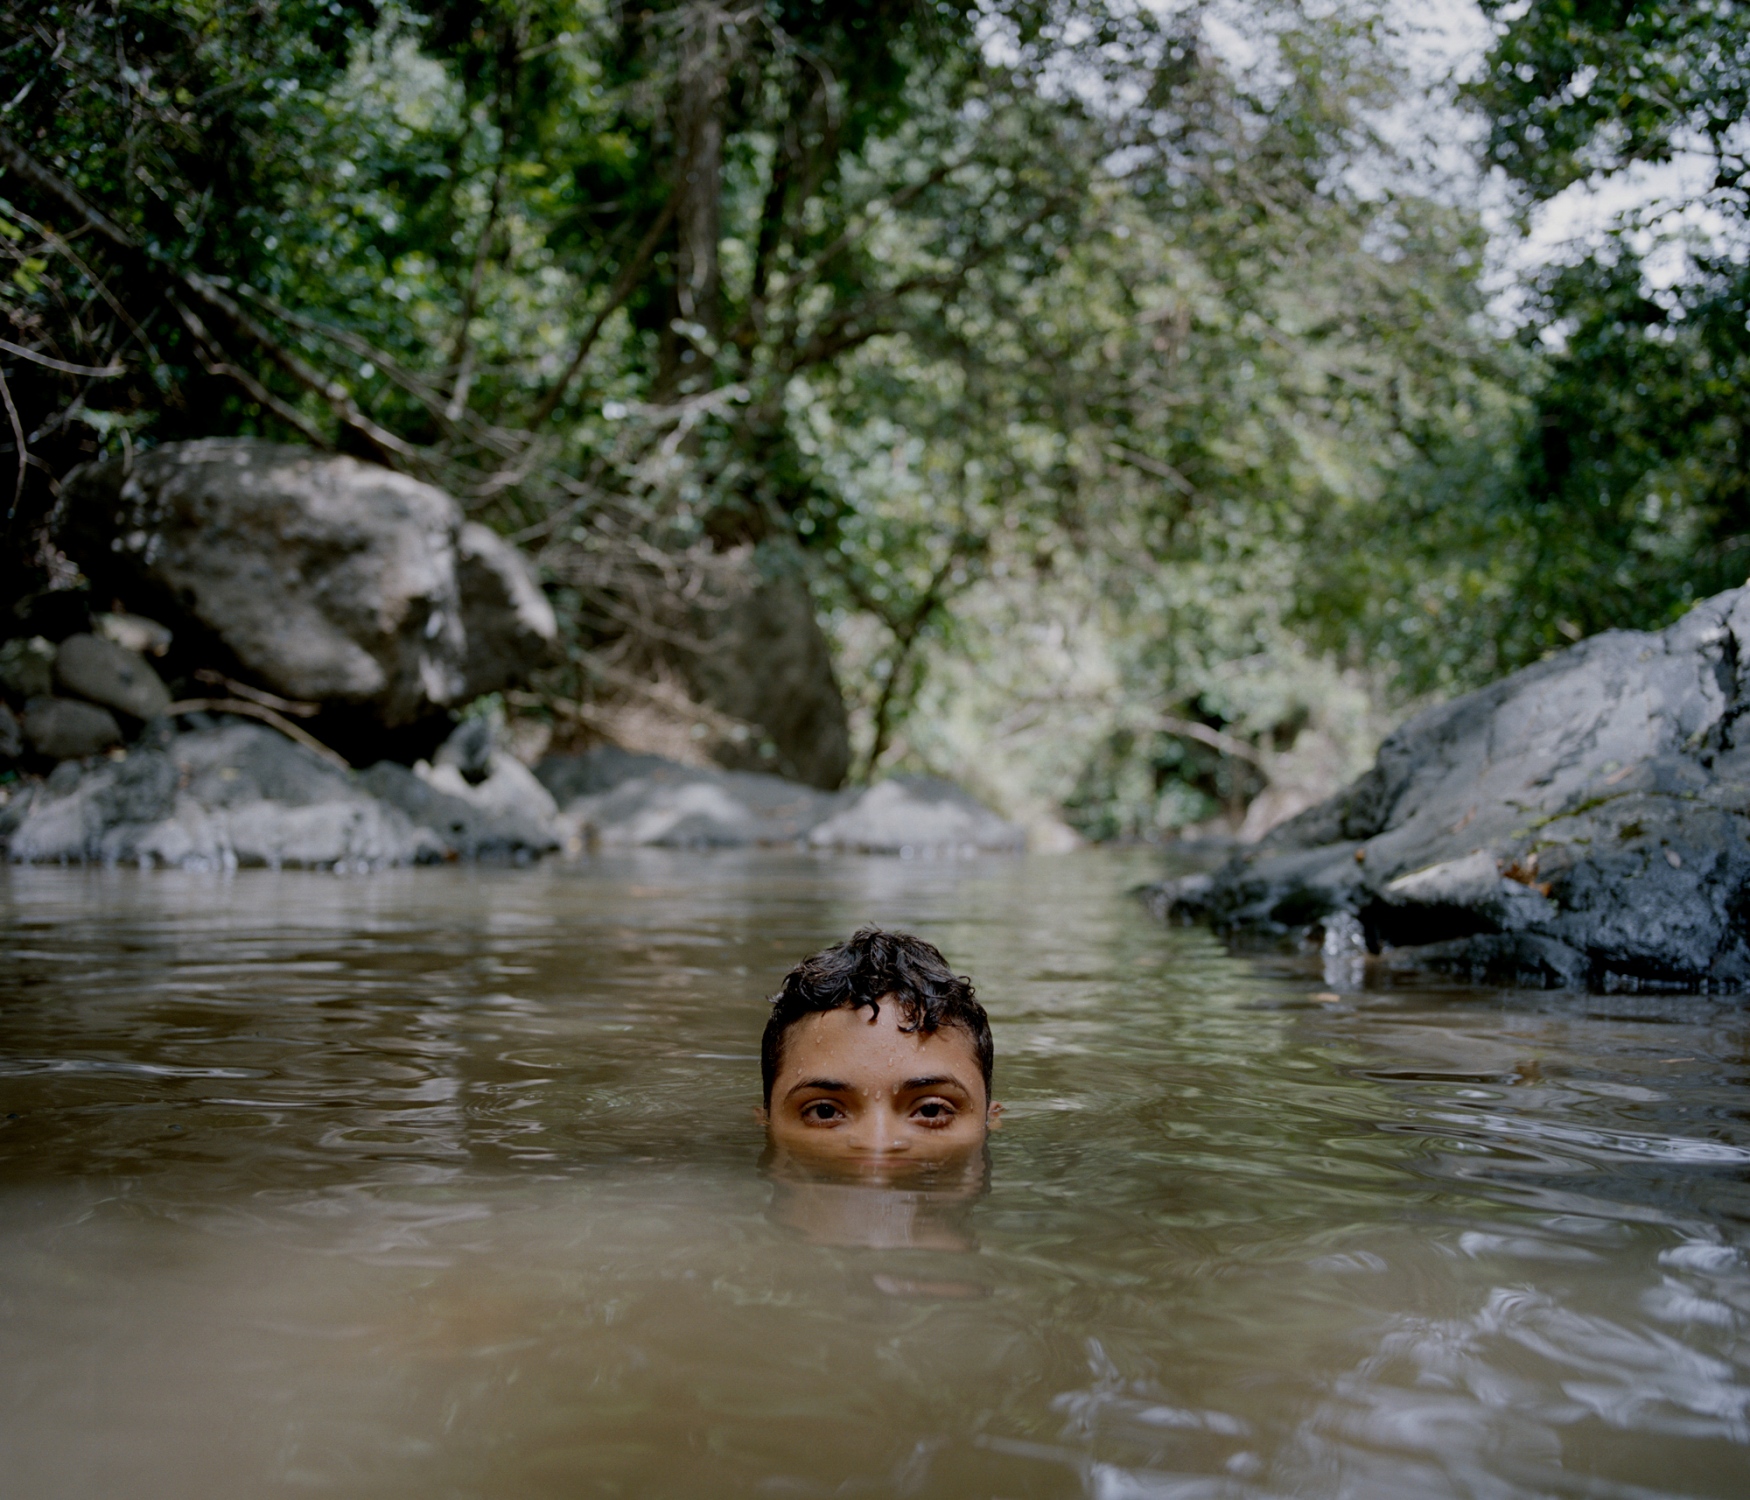 La Isla Del Encanto; Borikén - My cousin, Eliam, cools off in a small pool of water...